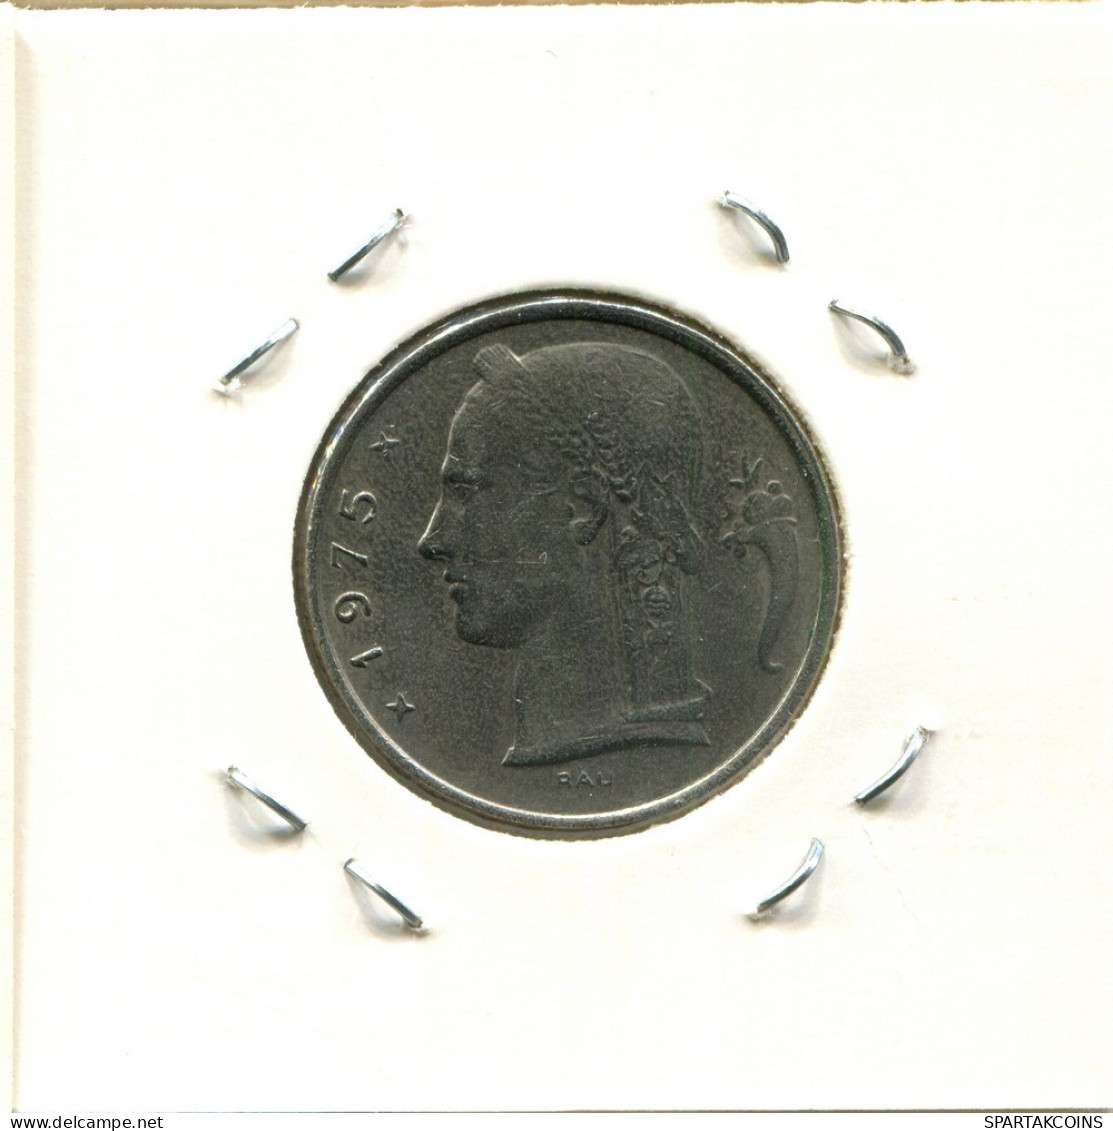 5 FRANCS 1974 DUTCH Text BÉLGICA BELGIUM Moneda #BA611.E.A - 5 Frank